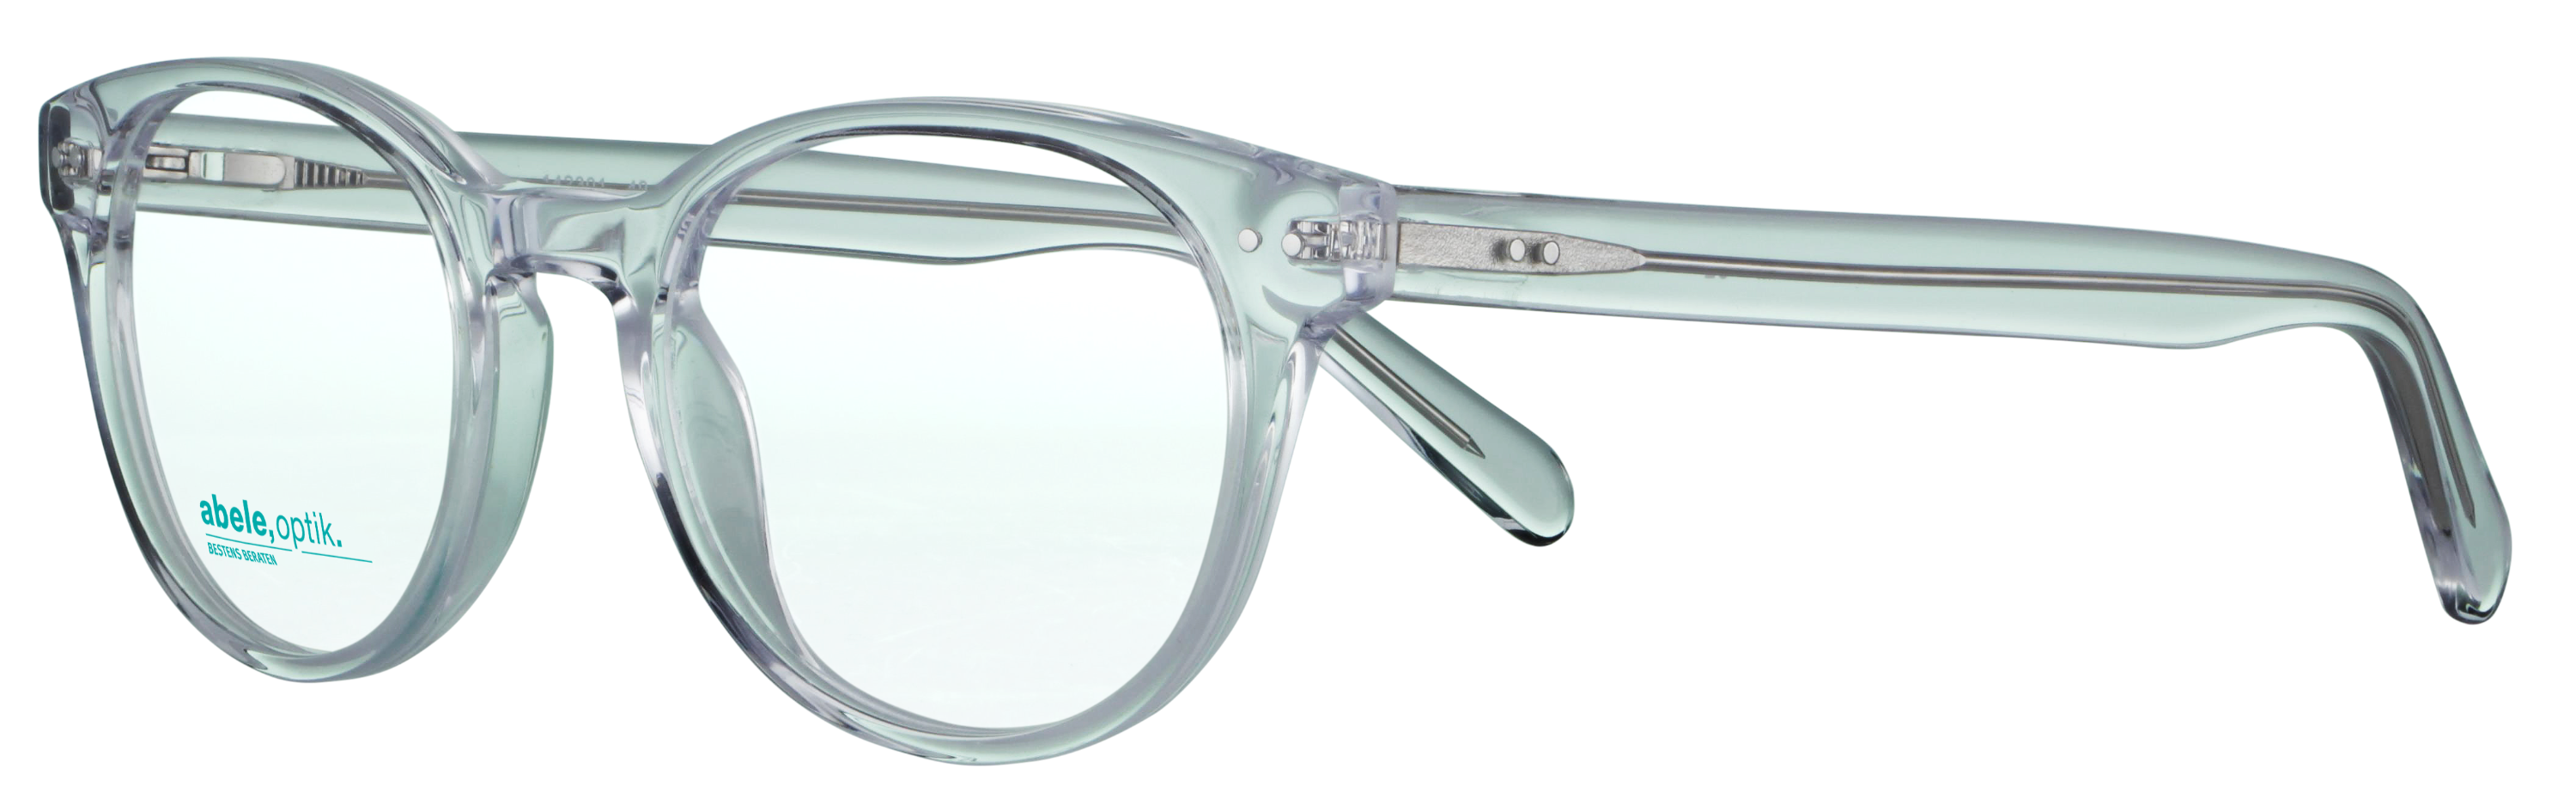 Das Bild zeigt die Korrektionsbrille 142301 von der Marke Abele Optik in transparent.